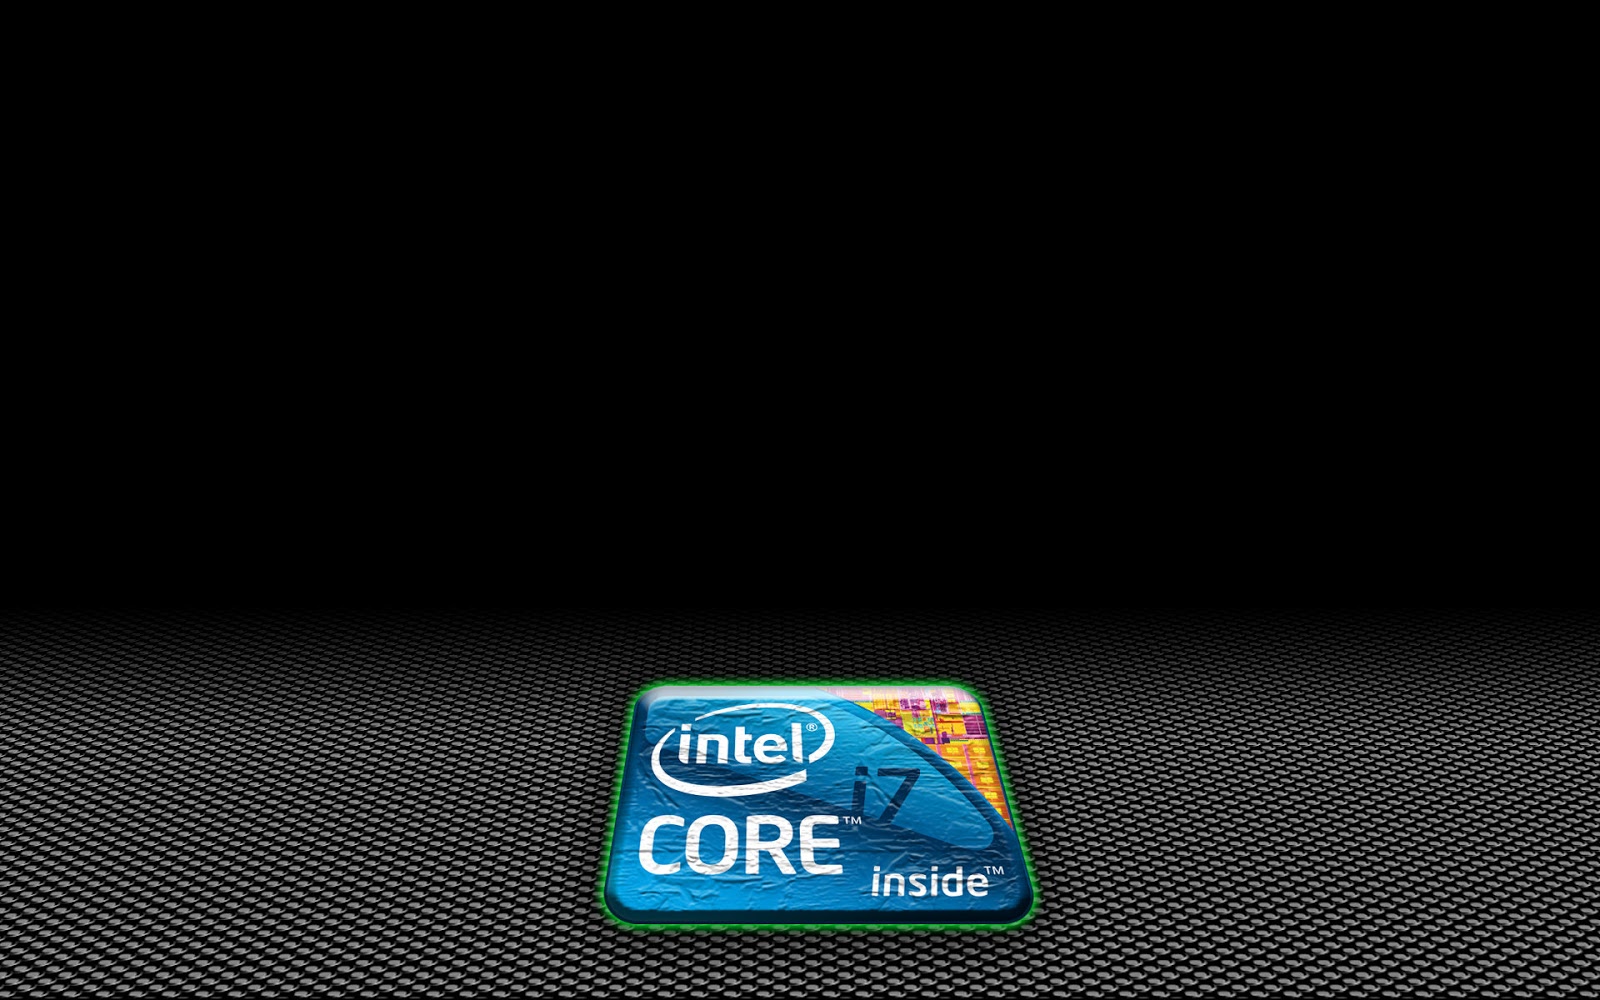 HD Intel I7 Wallpaper